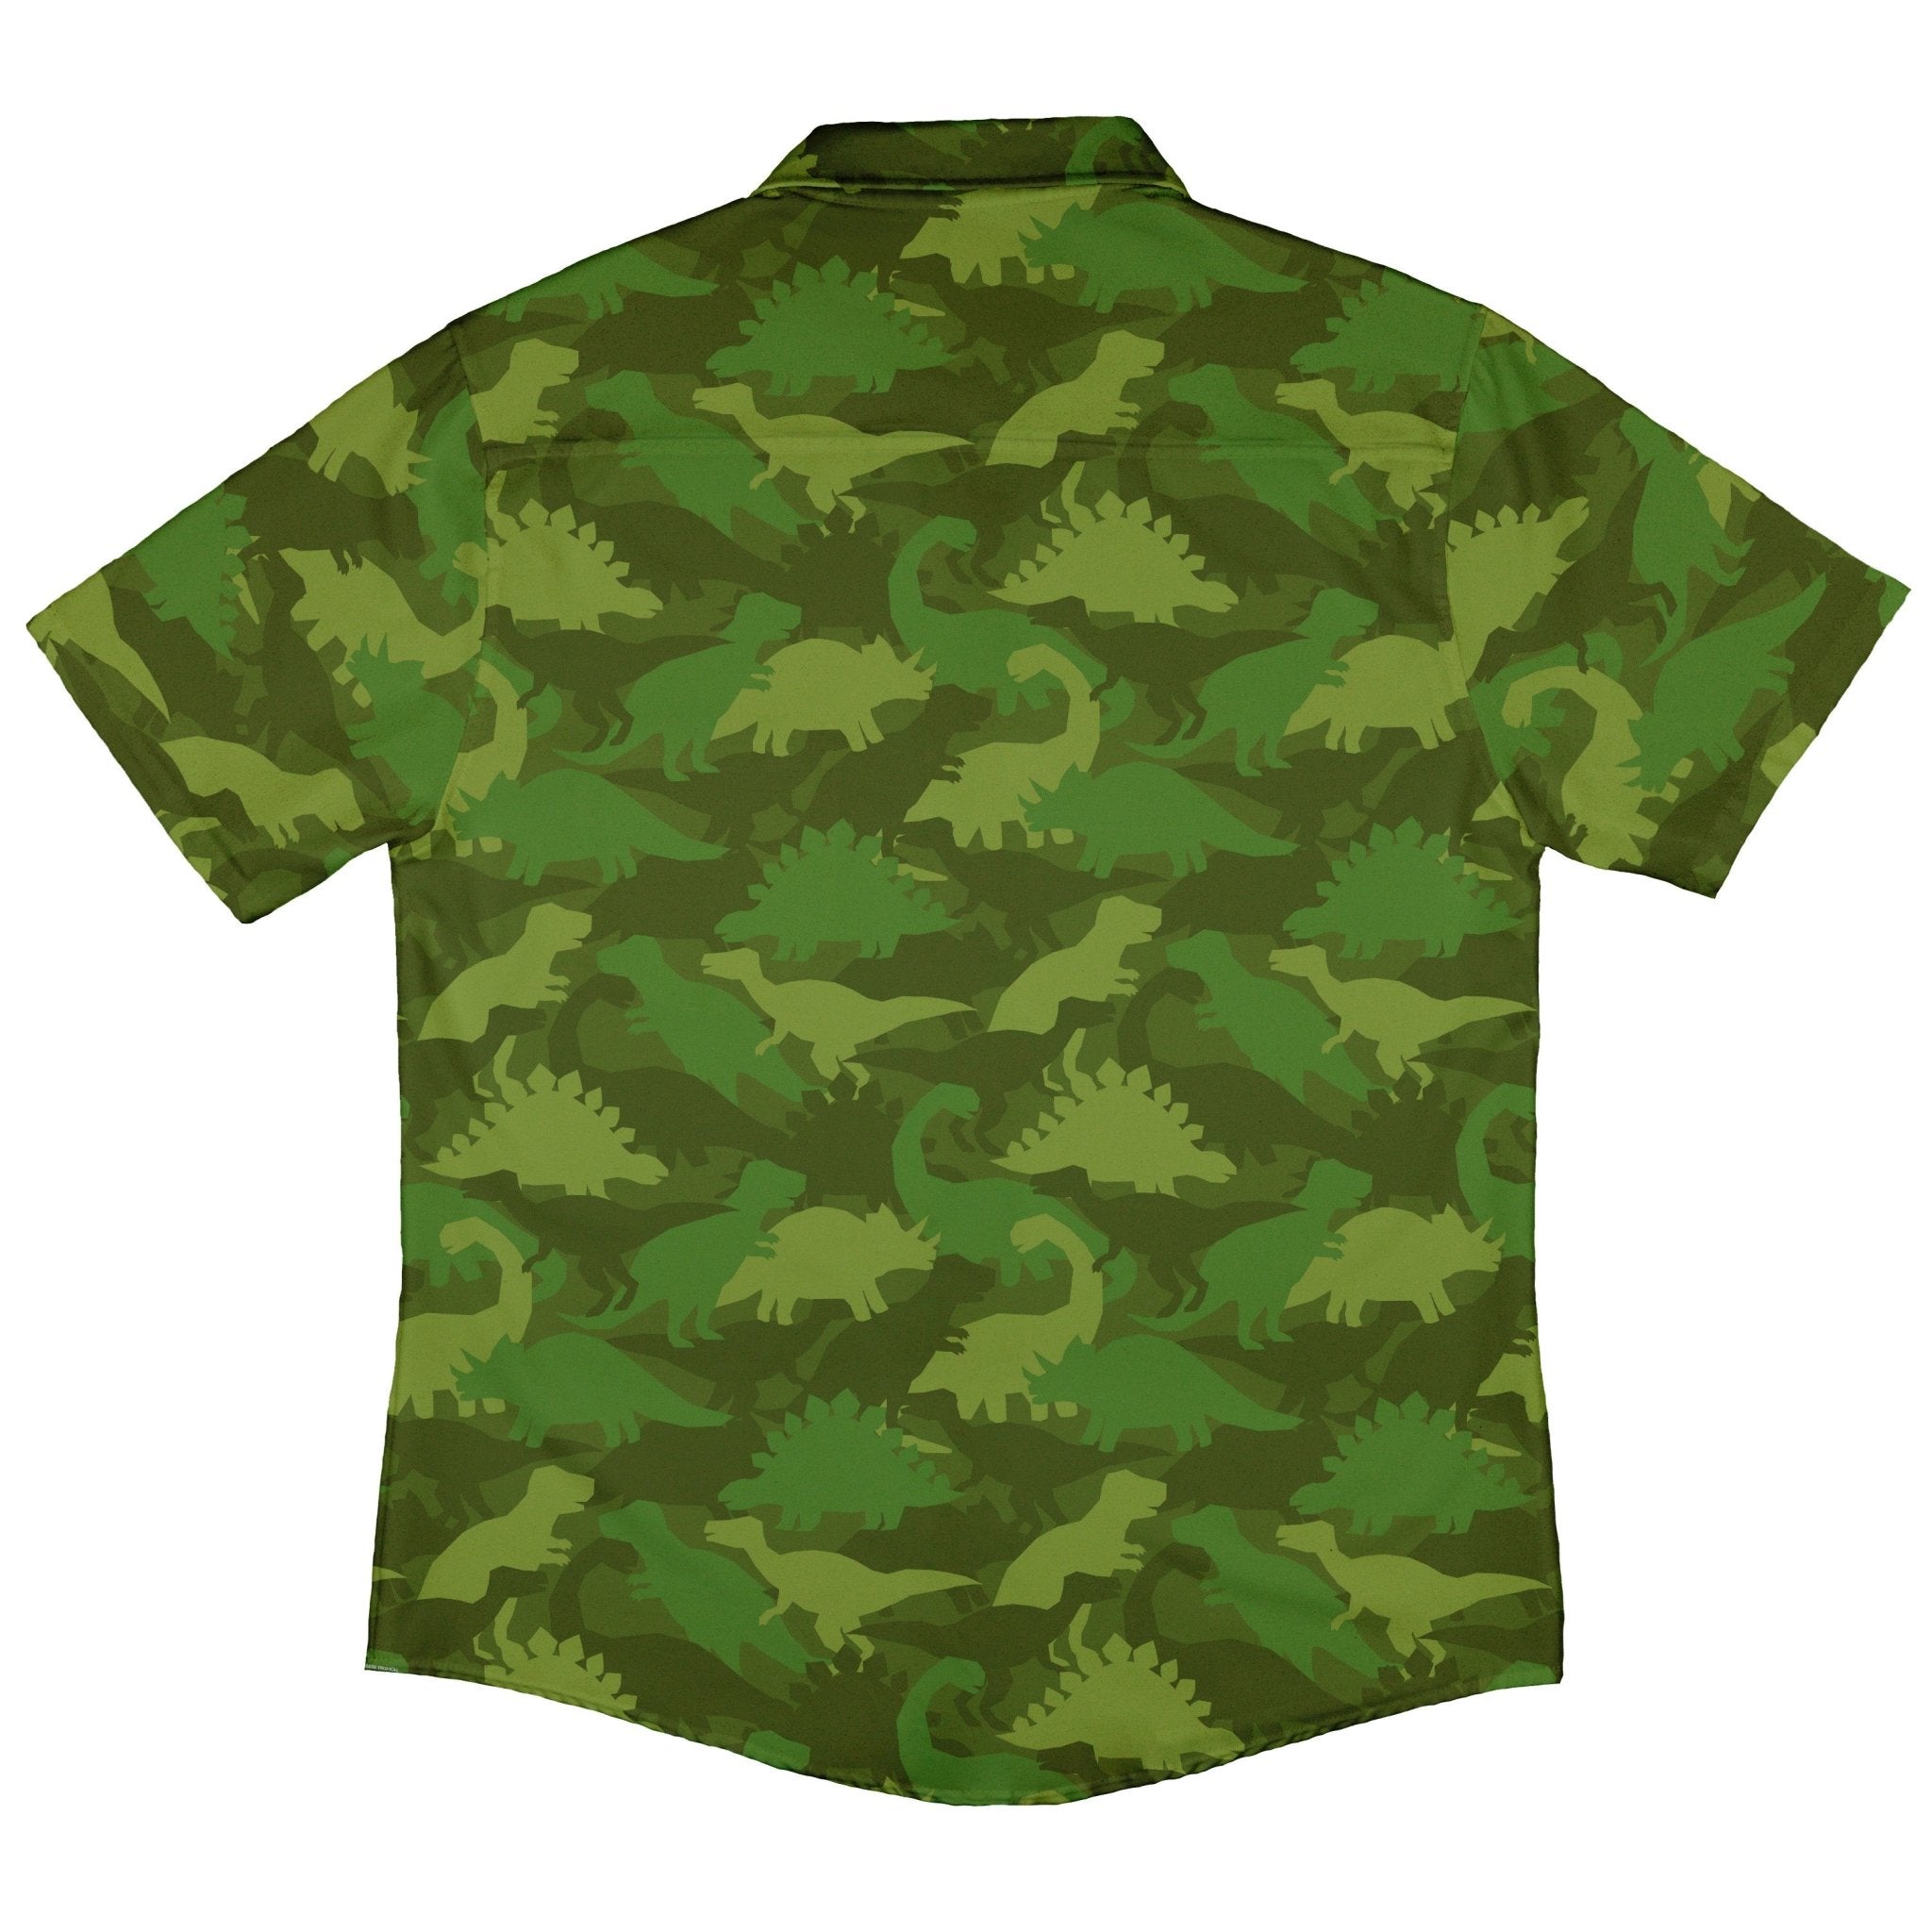 Dinosaur Khaki Army Dinosaur Green Button Up Shirt - adult sizing - dinosaur print -